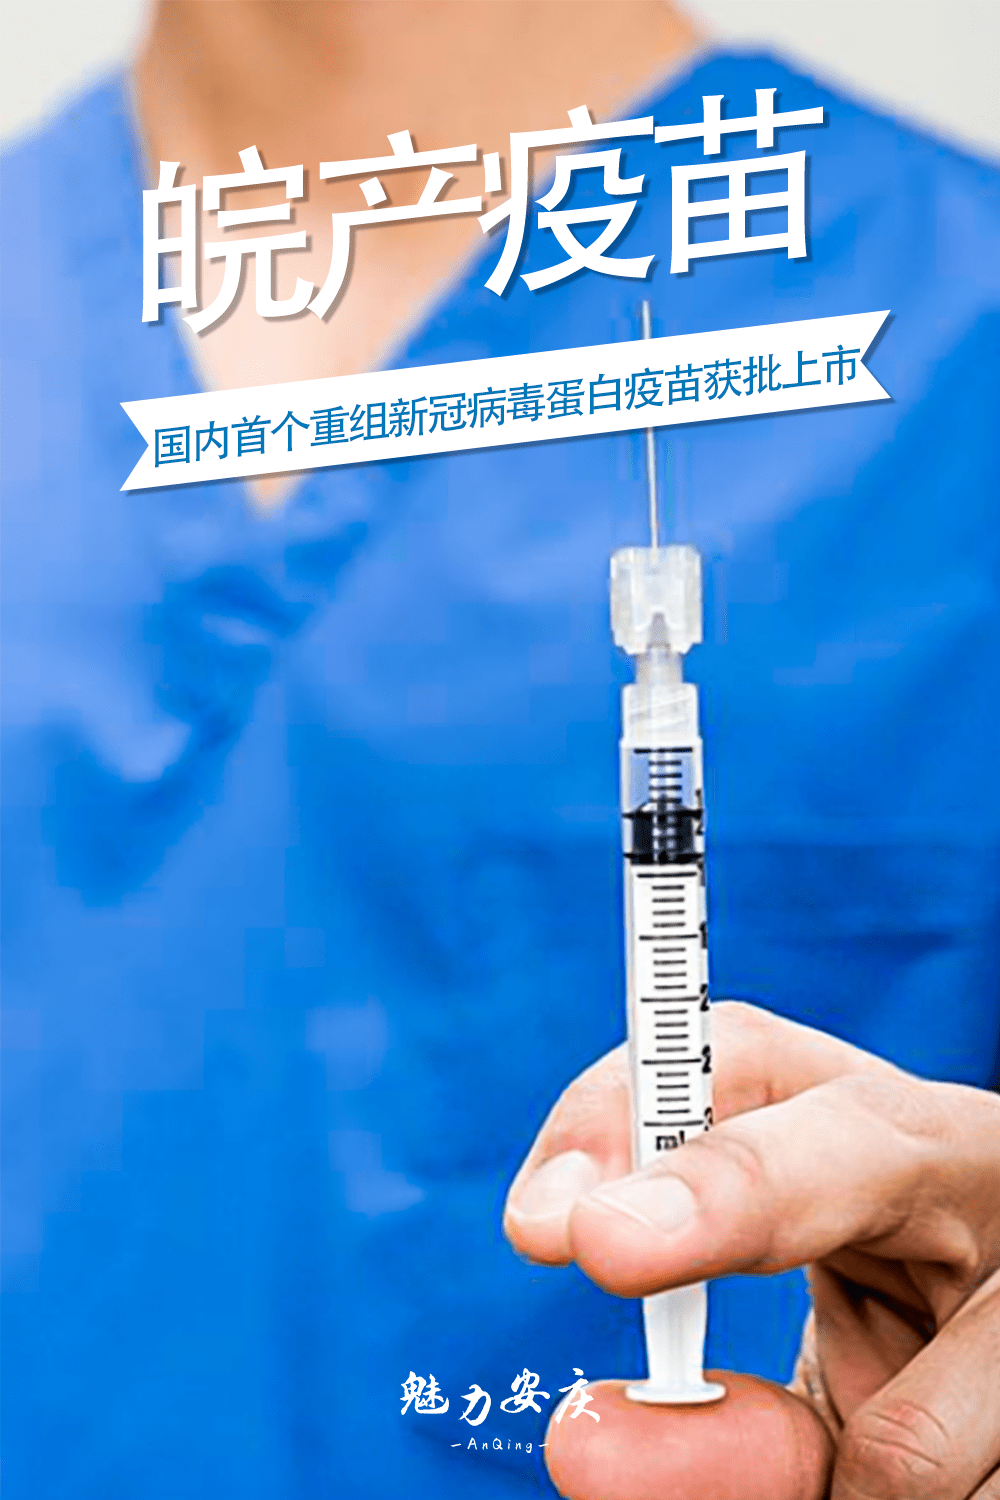 新冠疫苗蓝色瓶子图片